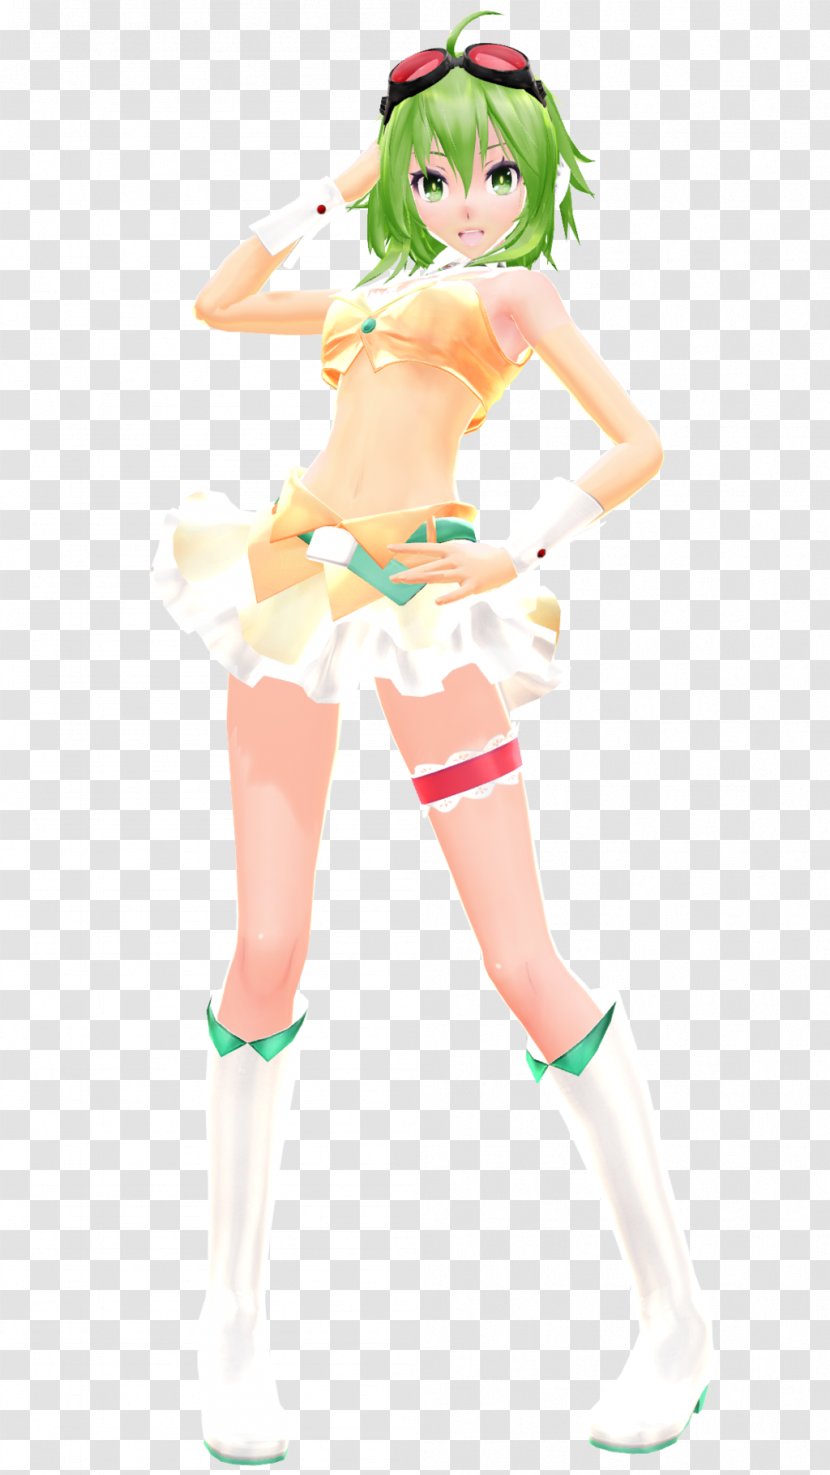 Megpoid MikuMikuDance Vocaloid 3 Hatsune Miku - Silhouette - Tree Transparent PNG